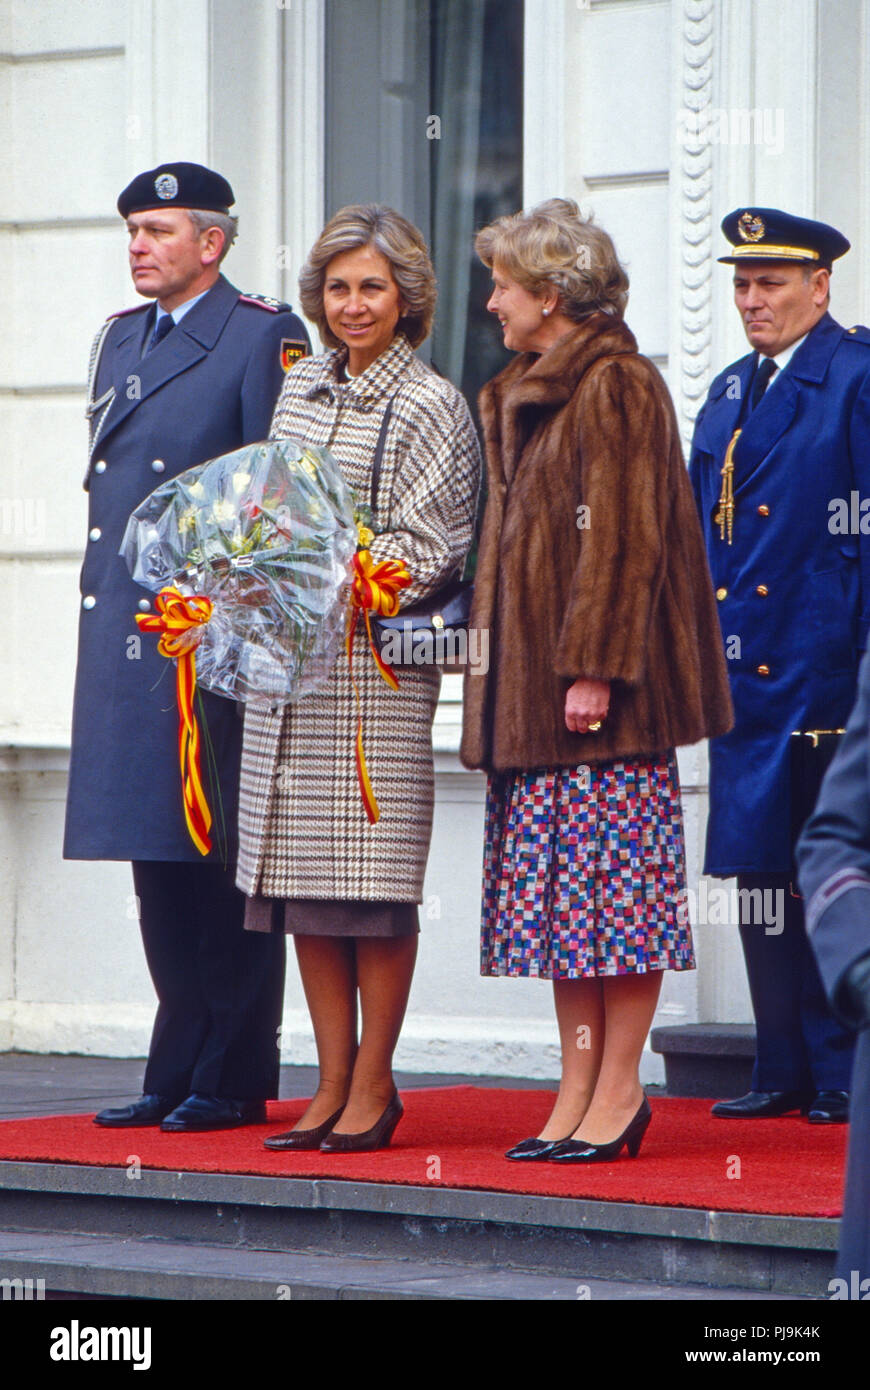 Königin Sophia von Spanien mit Marianne von Weizsäcker beim Besuch in Bonn, Deutschland 1986. Queen Sophia of Spain with Marianne von Weizsaecker at the visit in Bonn, Germany 1986. Stock Photo